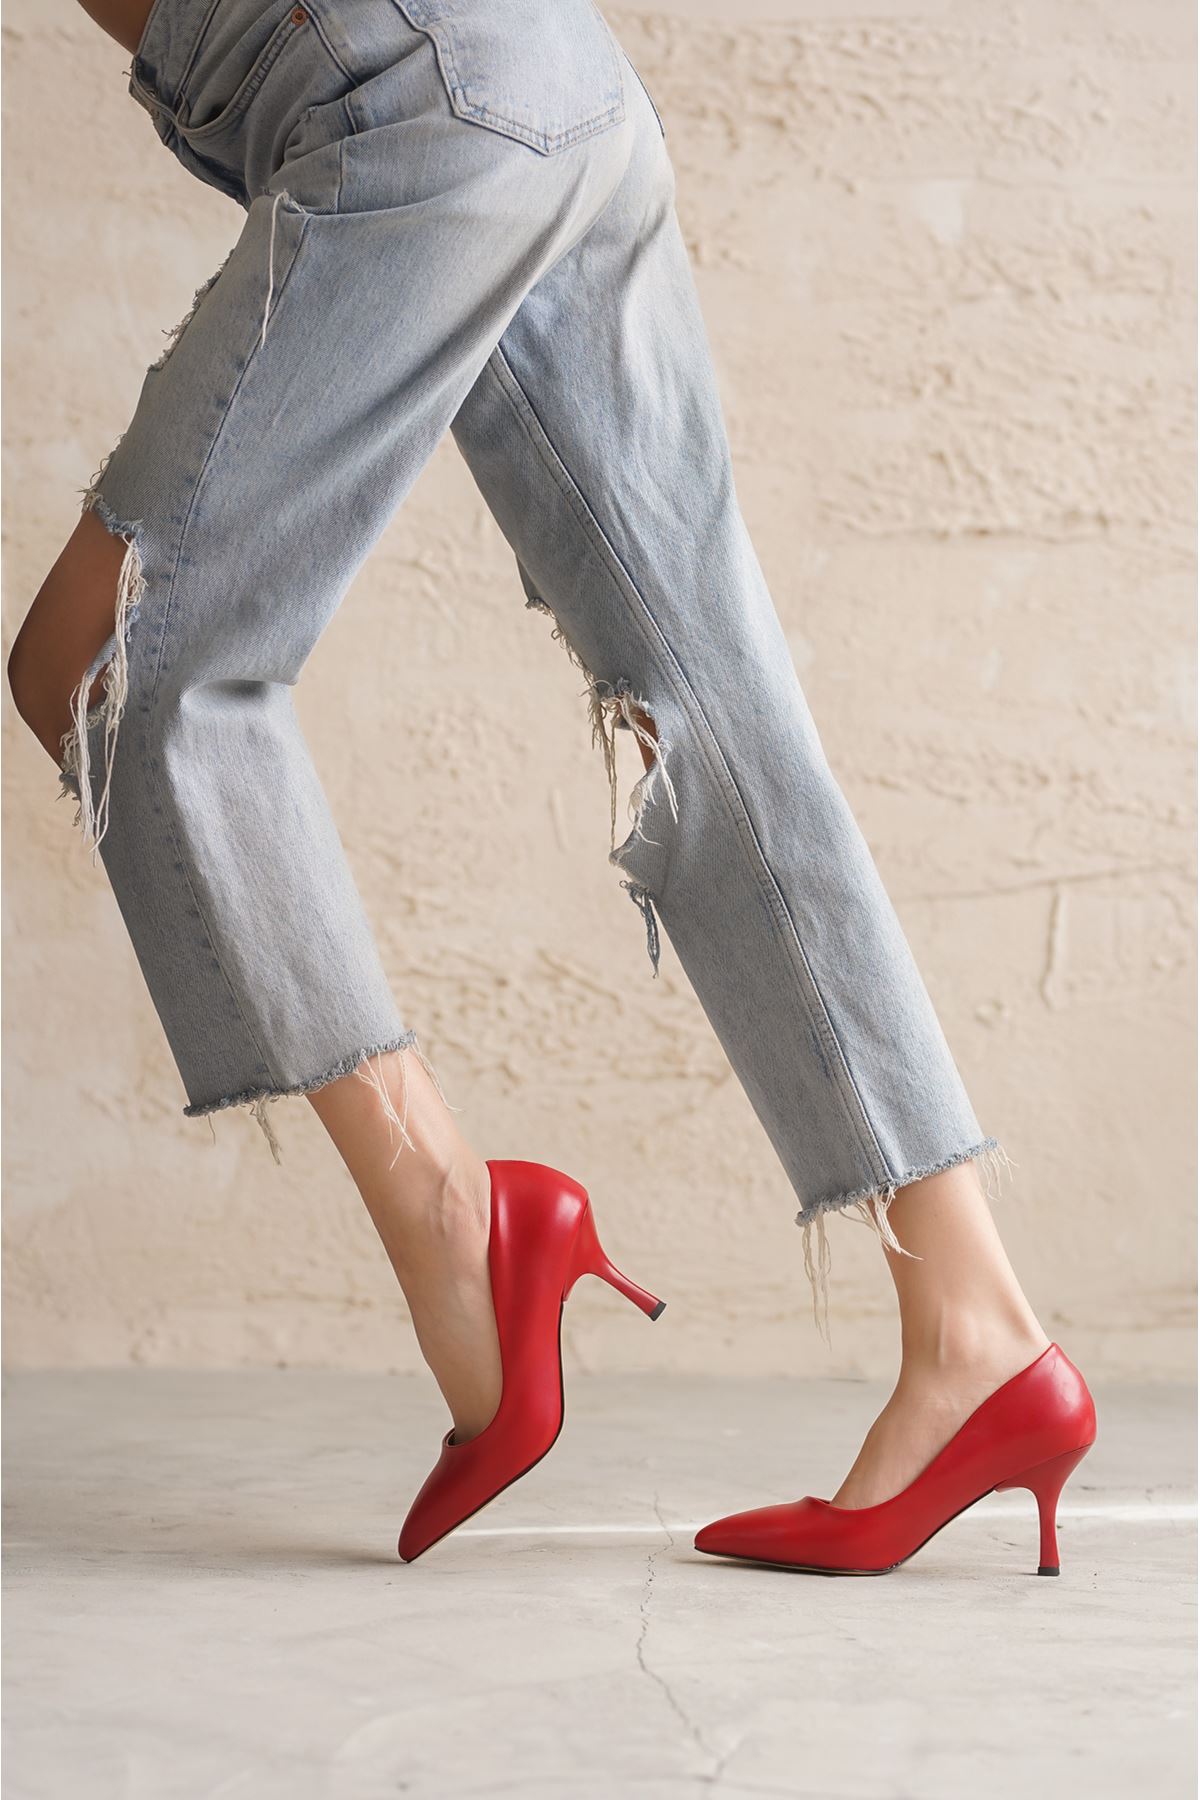 Kadın Armen İnce Kısa Topuklu Stiletto - Kırmızı Deri